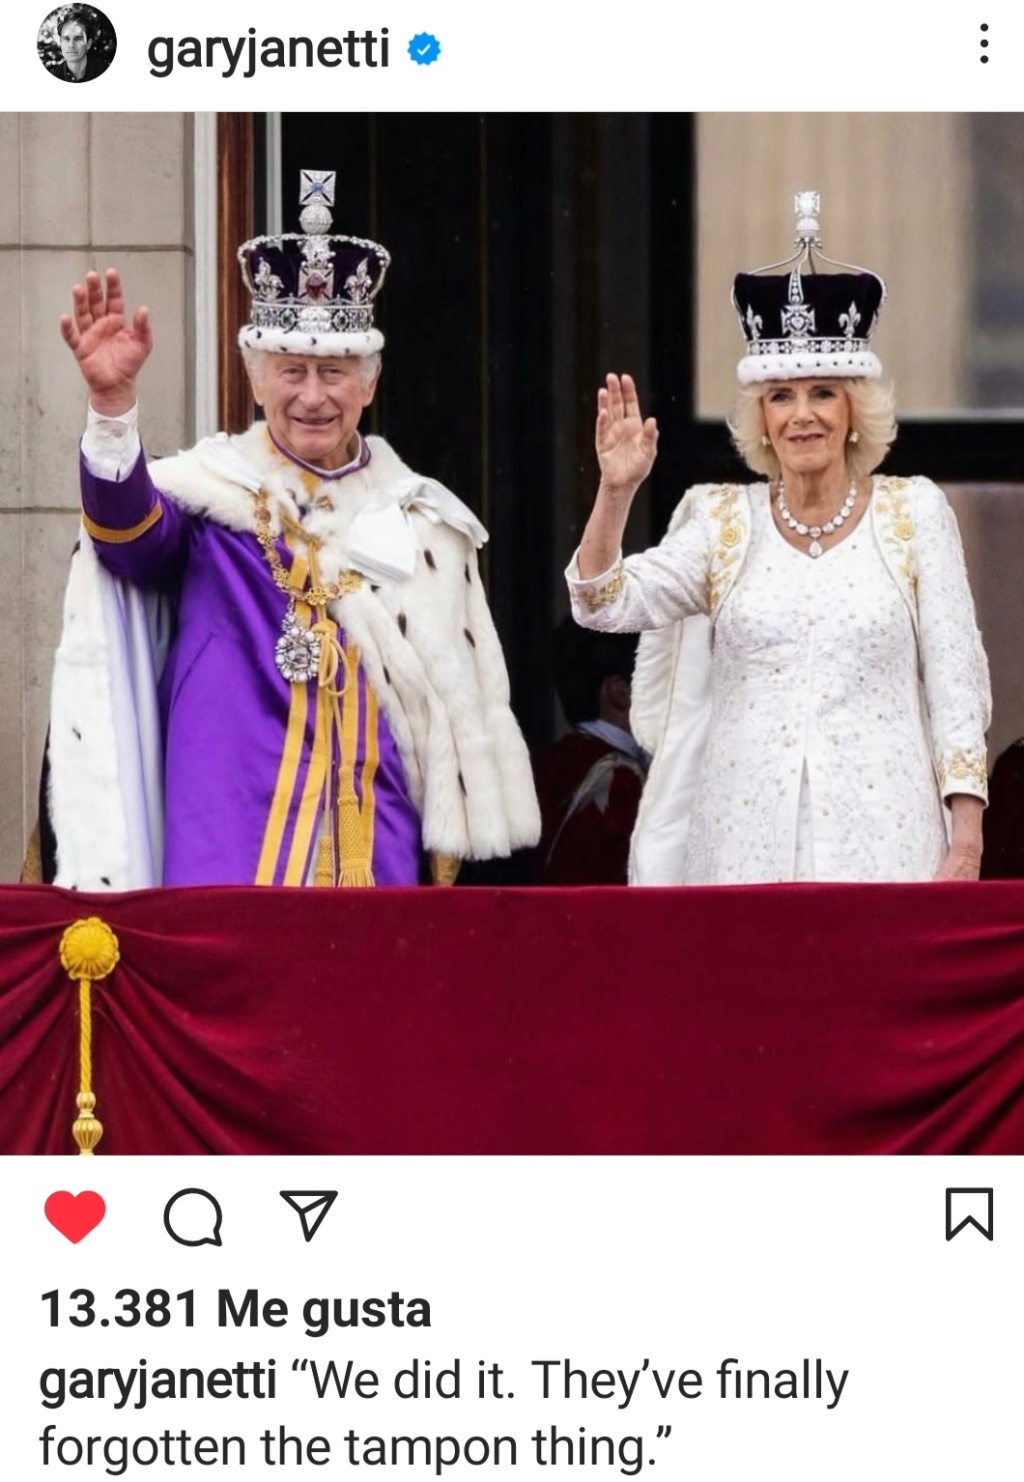 La reina Isabel II ha muerto, ¡Larga vida a Carlos III! - Página 12 Img_2265